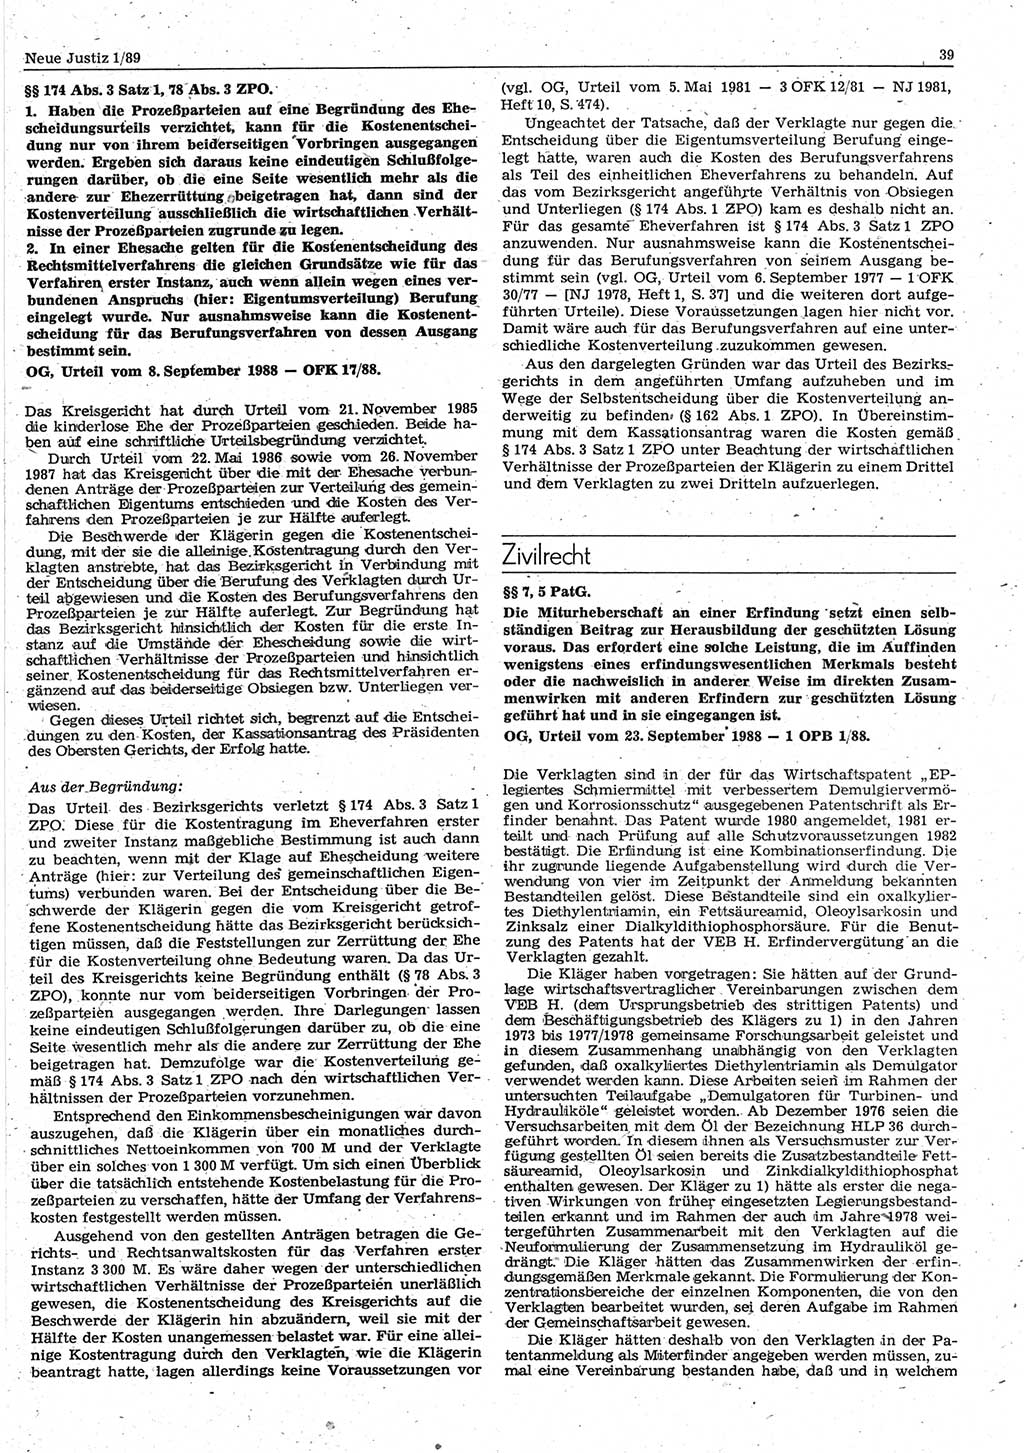 Neue Justiz (NJ), Zeitschrift für sozialistisches Recht und Gesetzlichkeit [Deutsche Demokratische Republik (DDR)], 43. Jahrgang 1989, Seite 39 (NJ DDR 1989, S. 39)